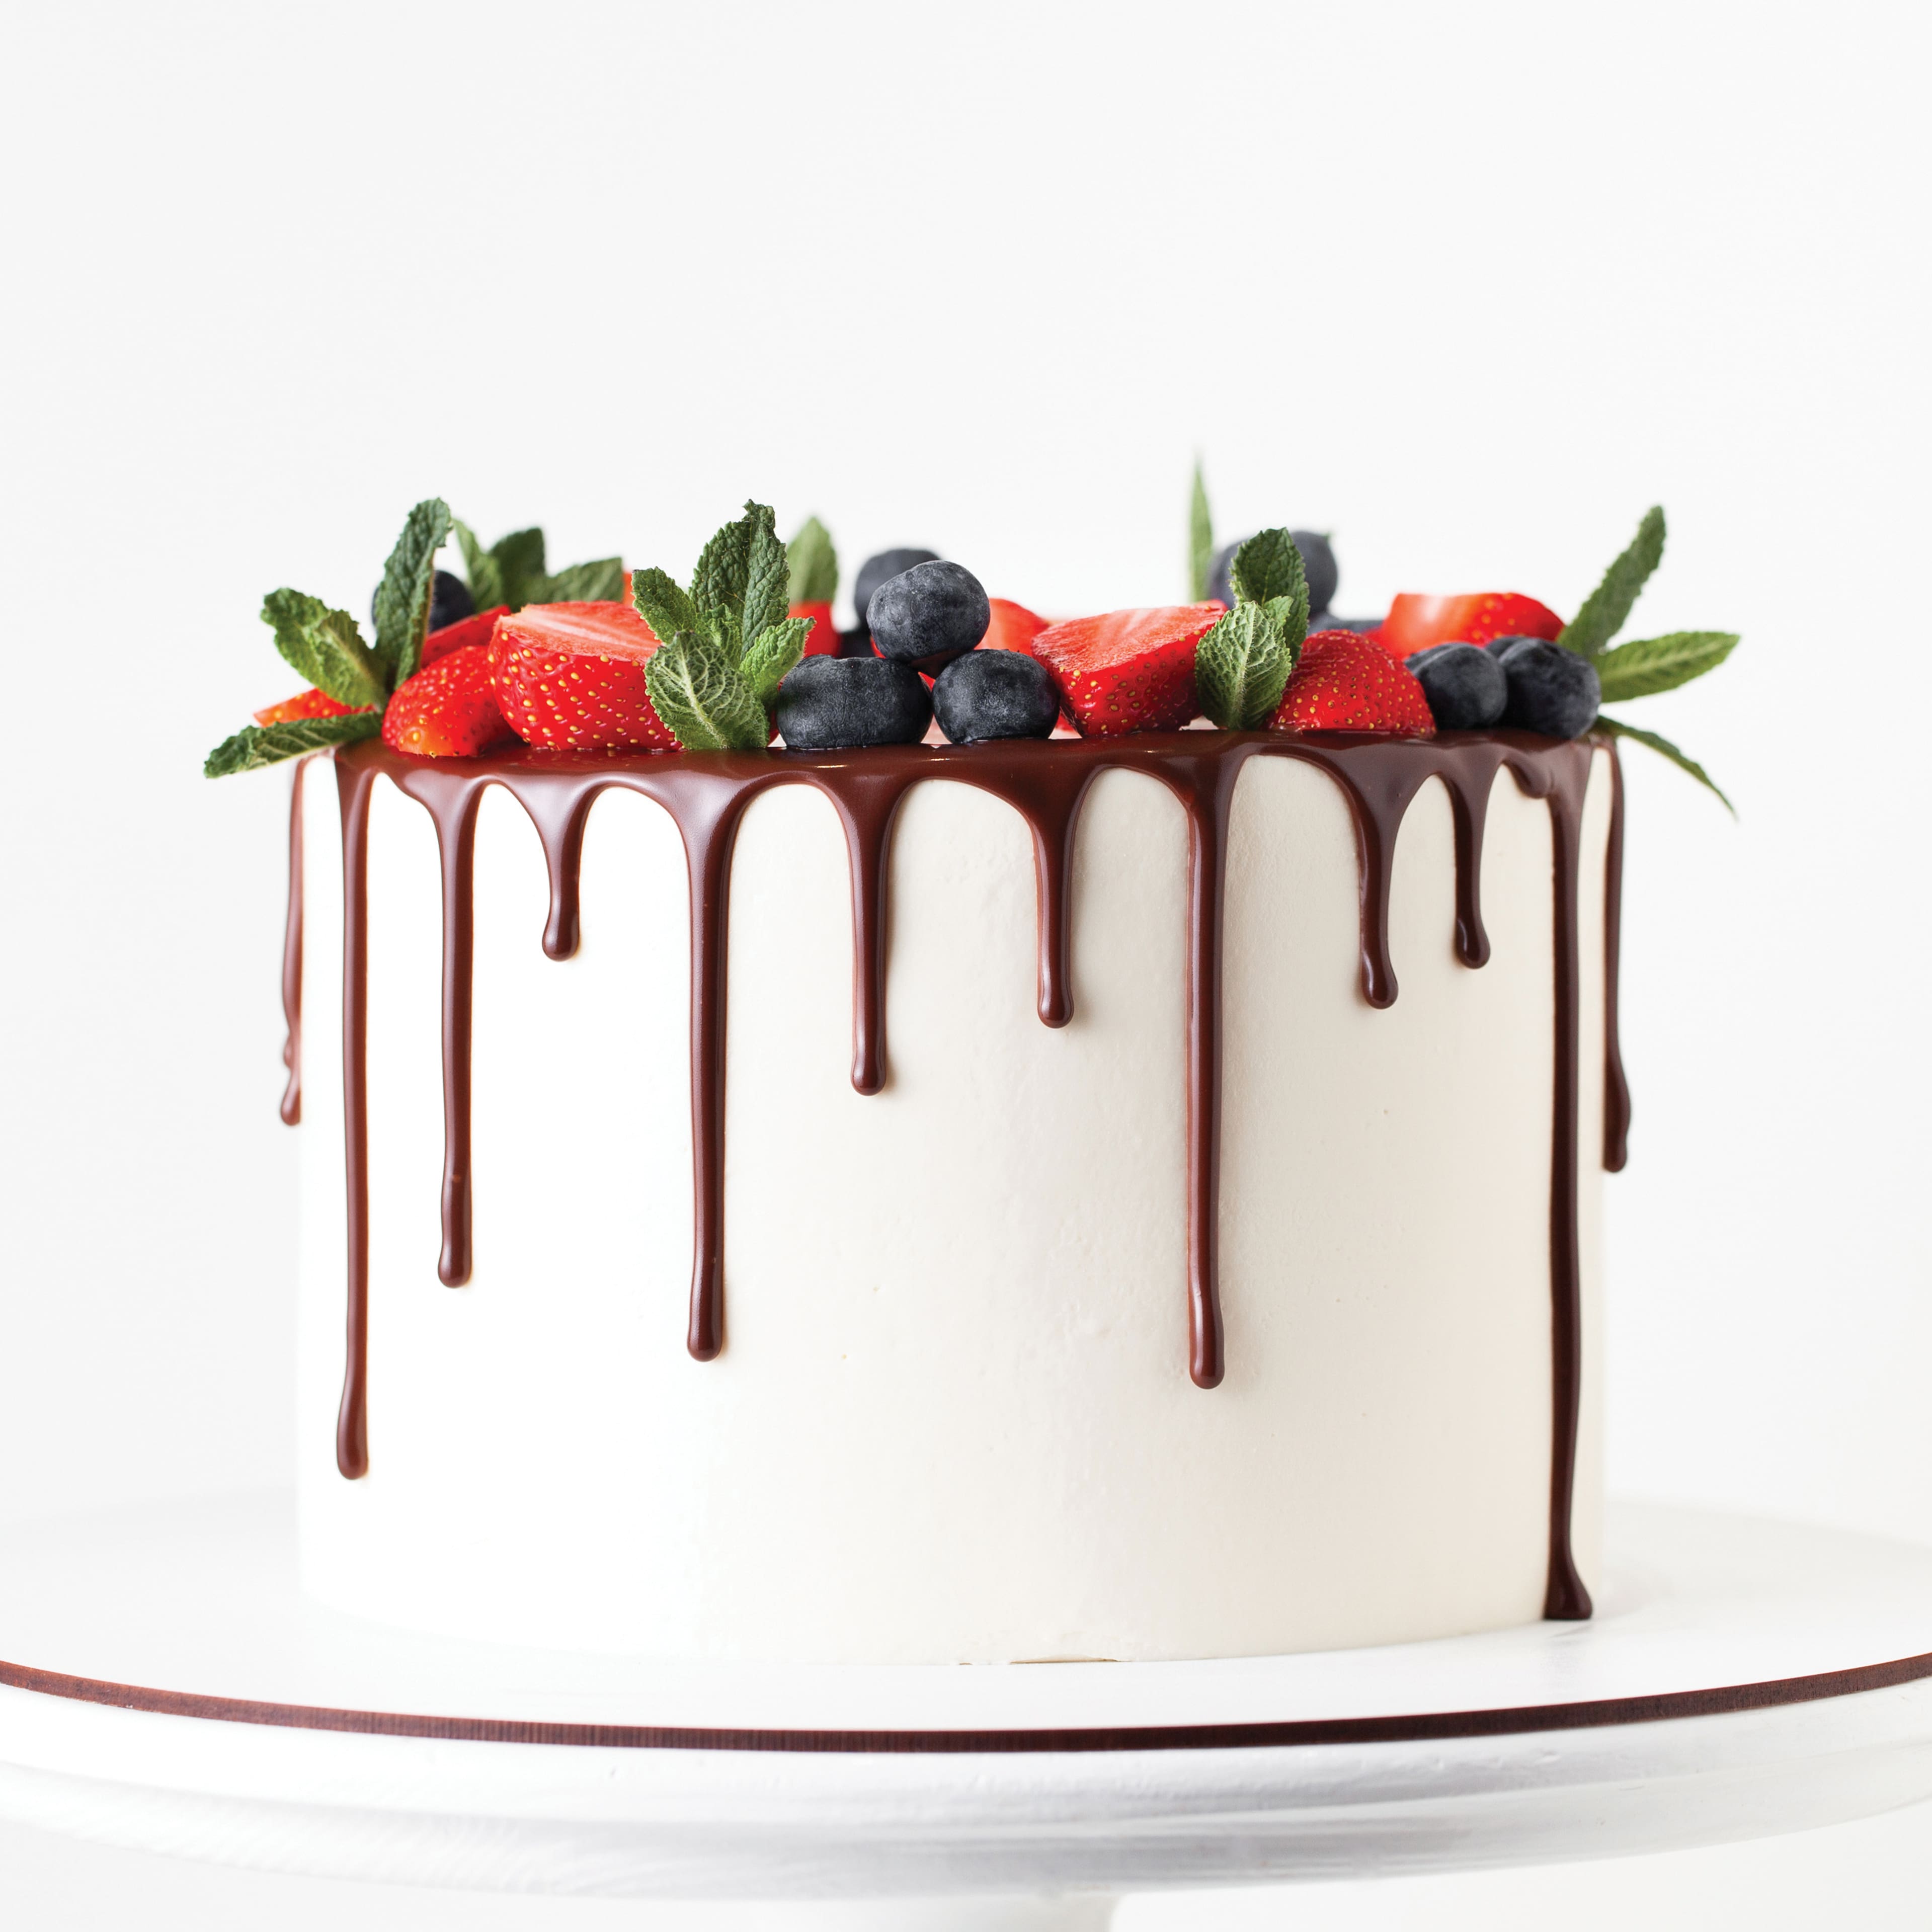 Satin Ice&#xAE; White Chocolate Cake Drip